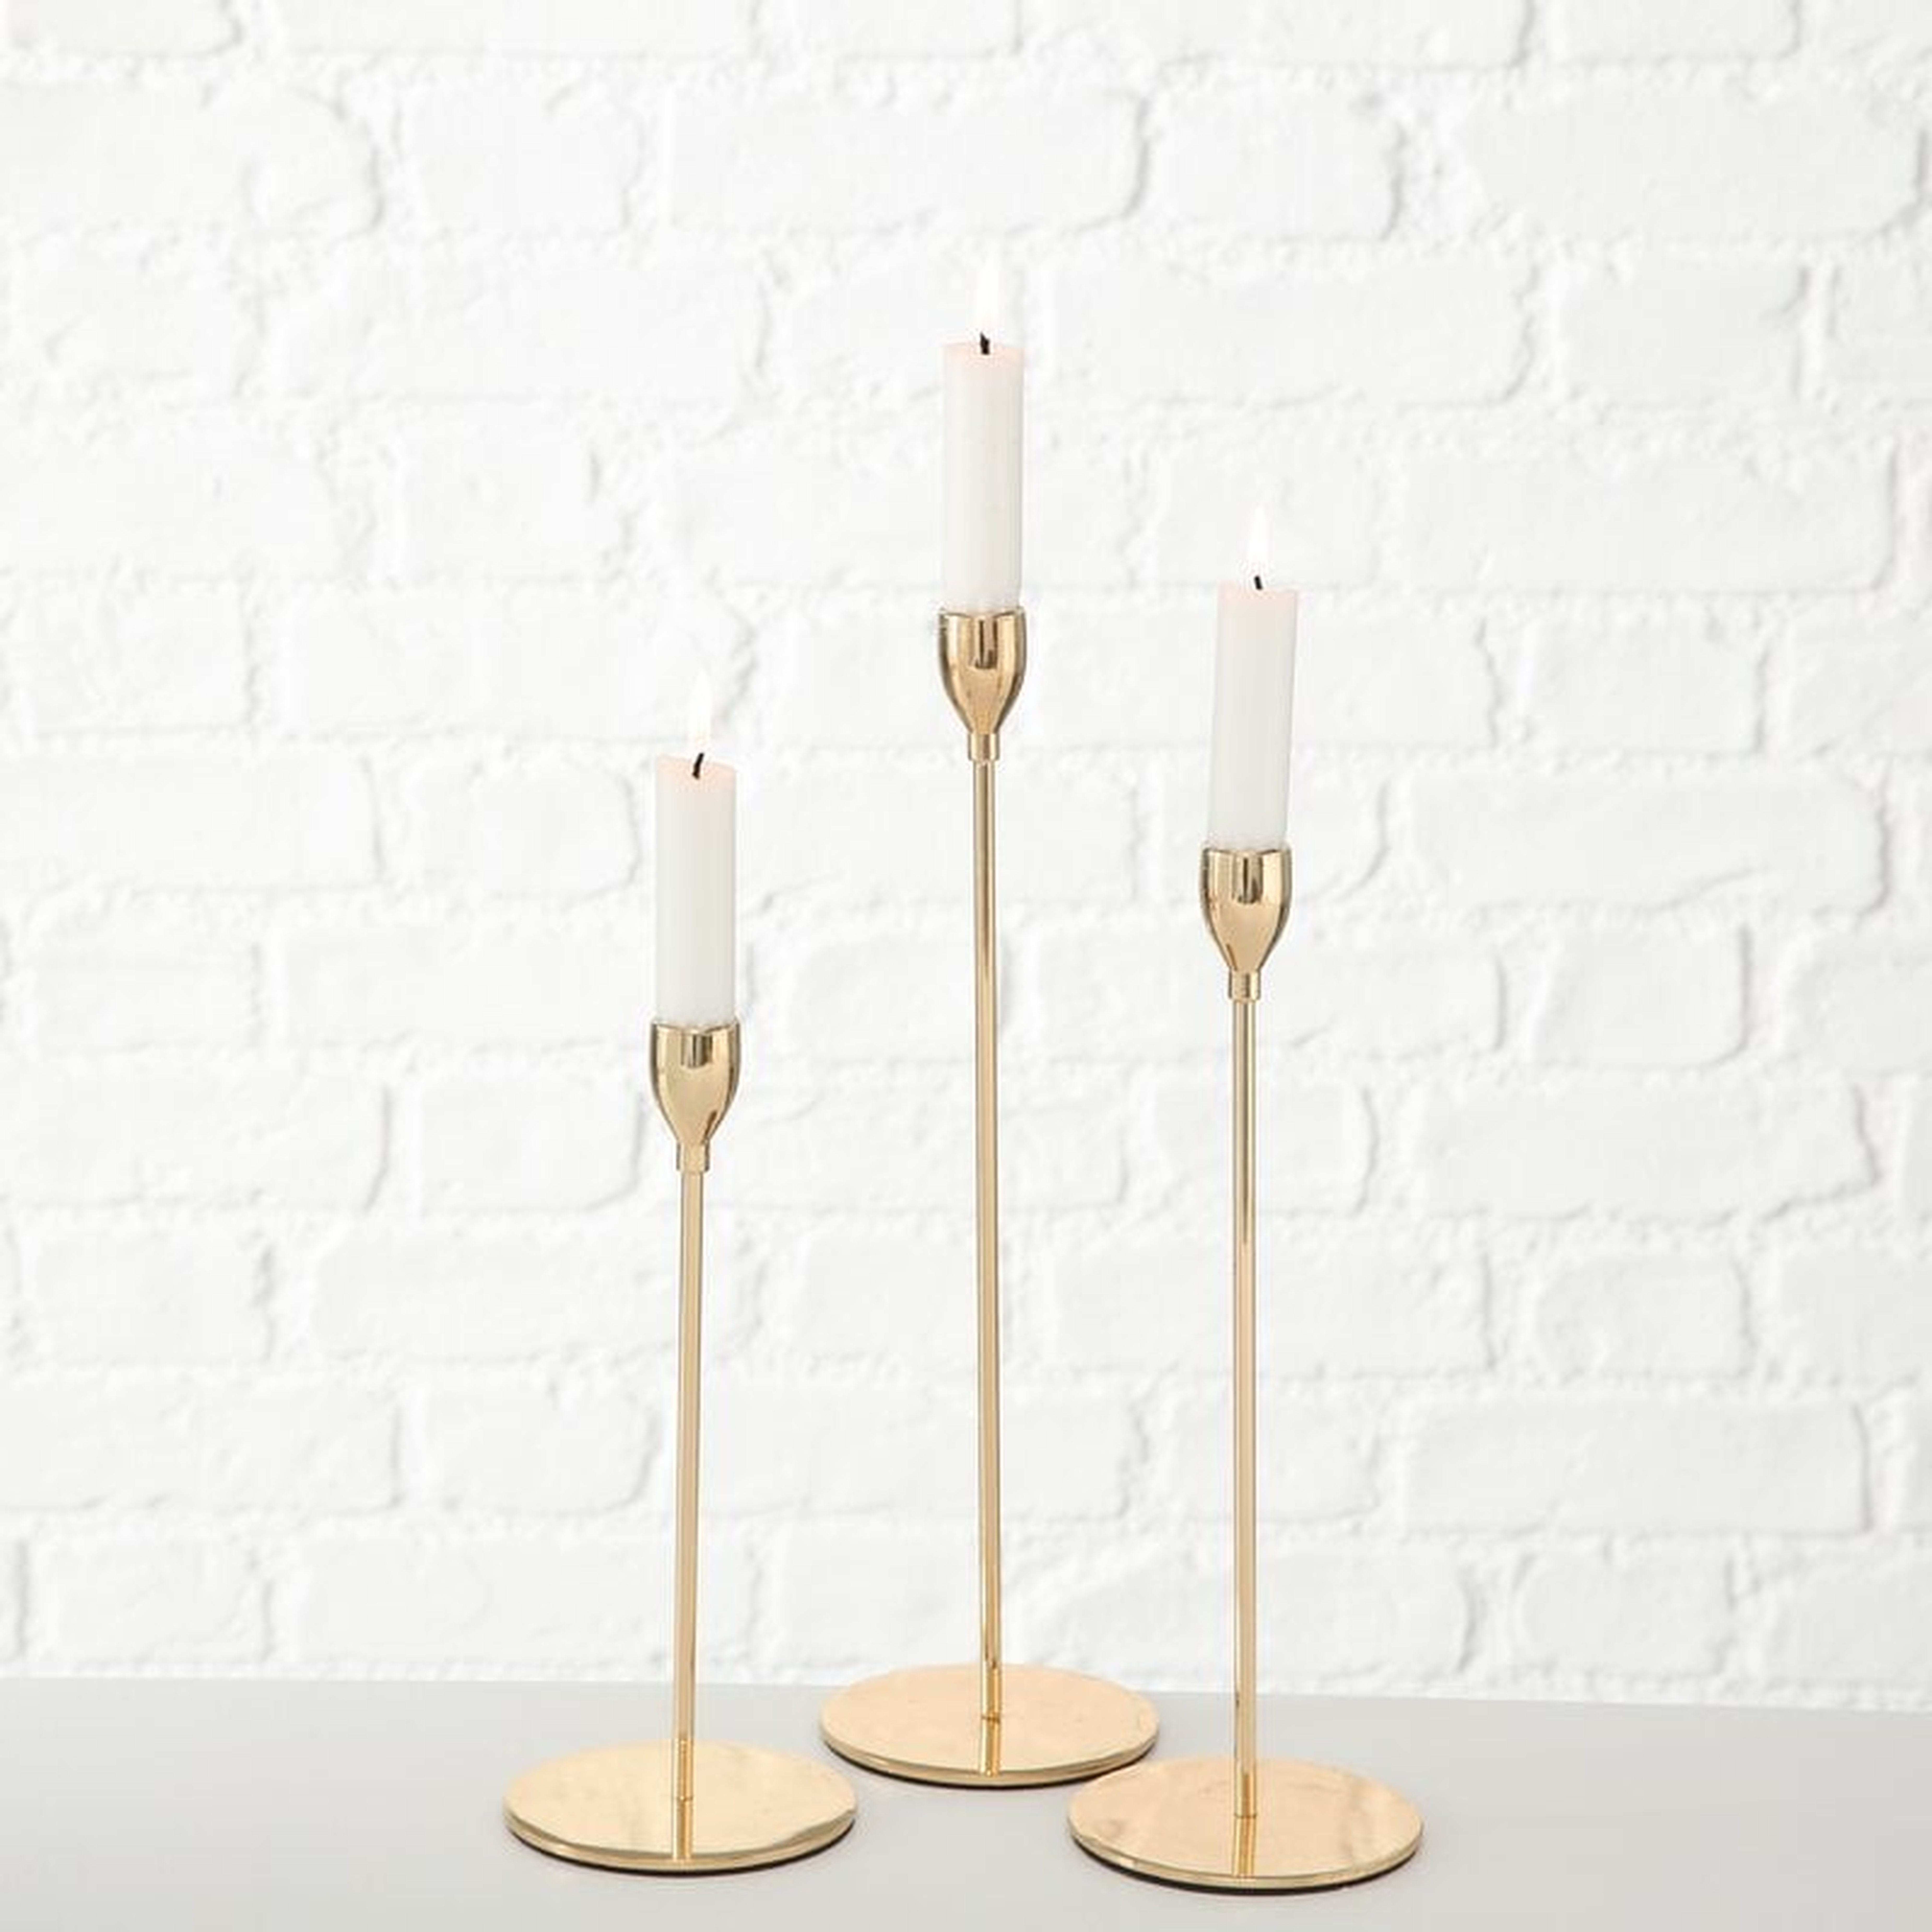 Tulip Top Metal Candlestick, Set of 3 - Wayfair